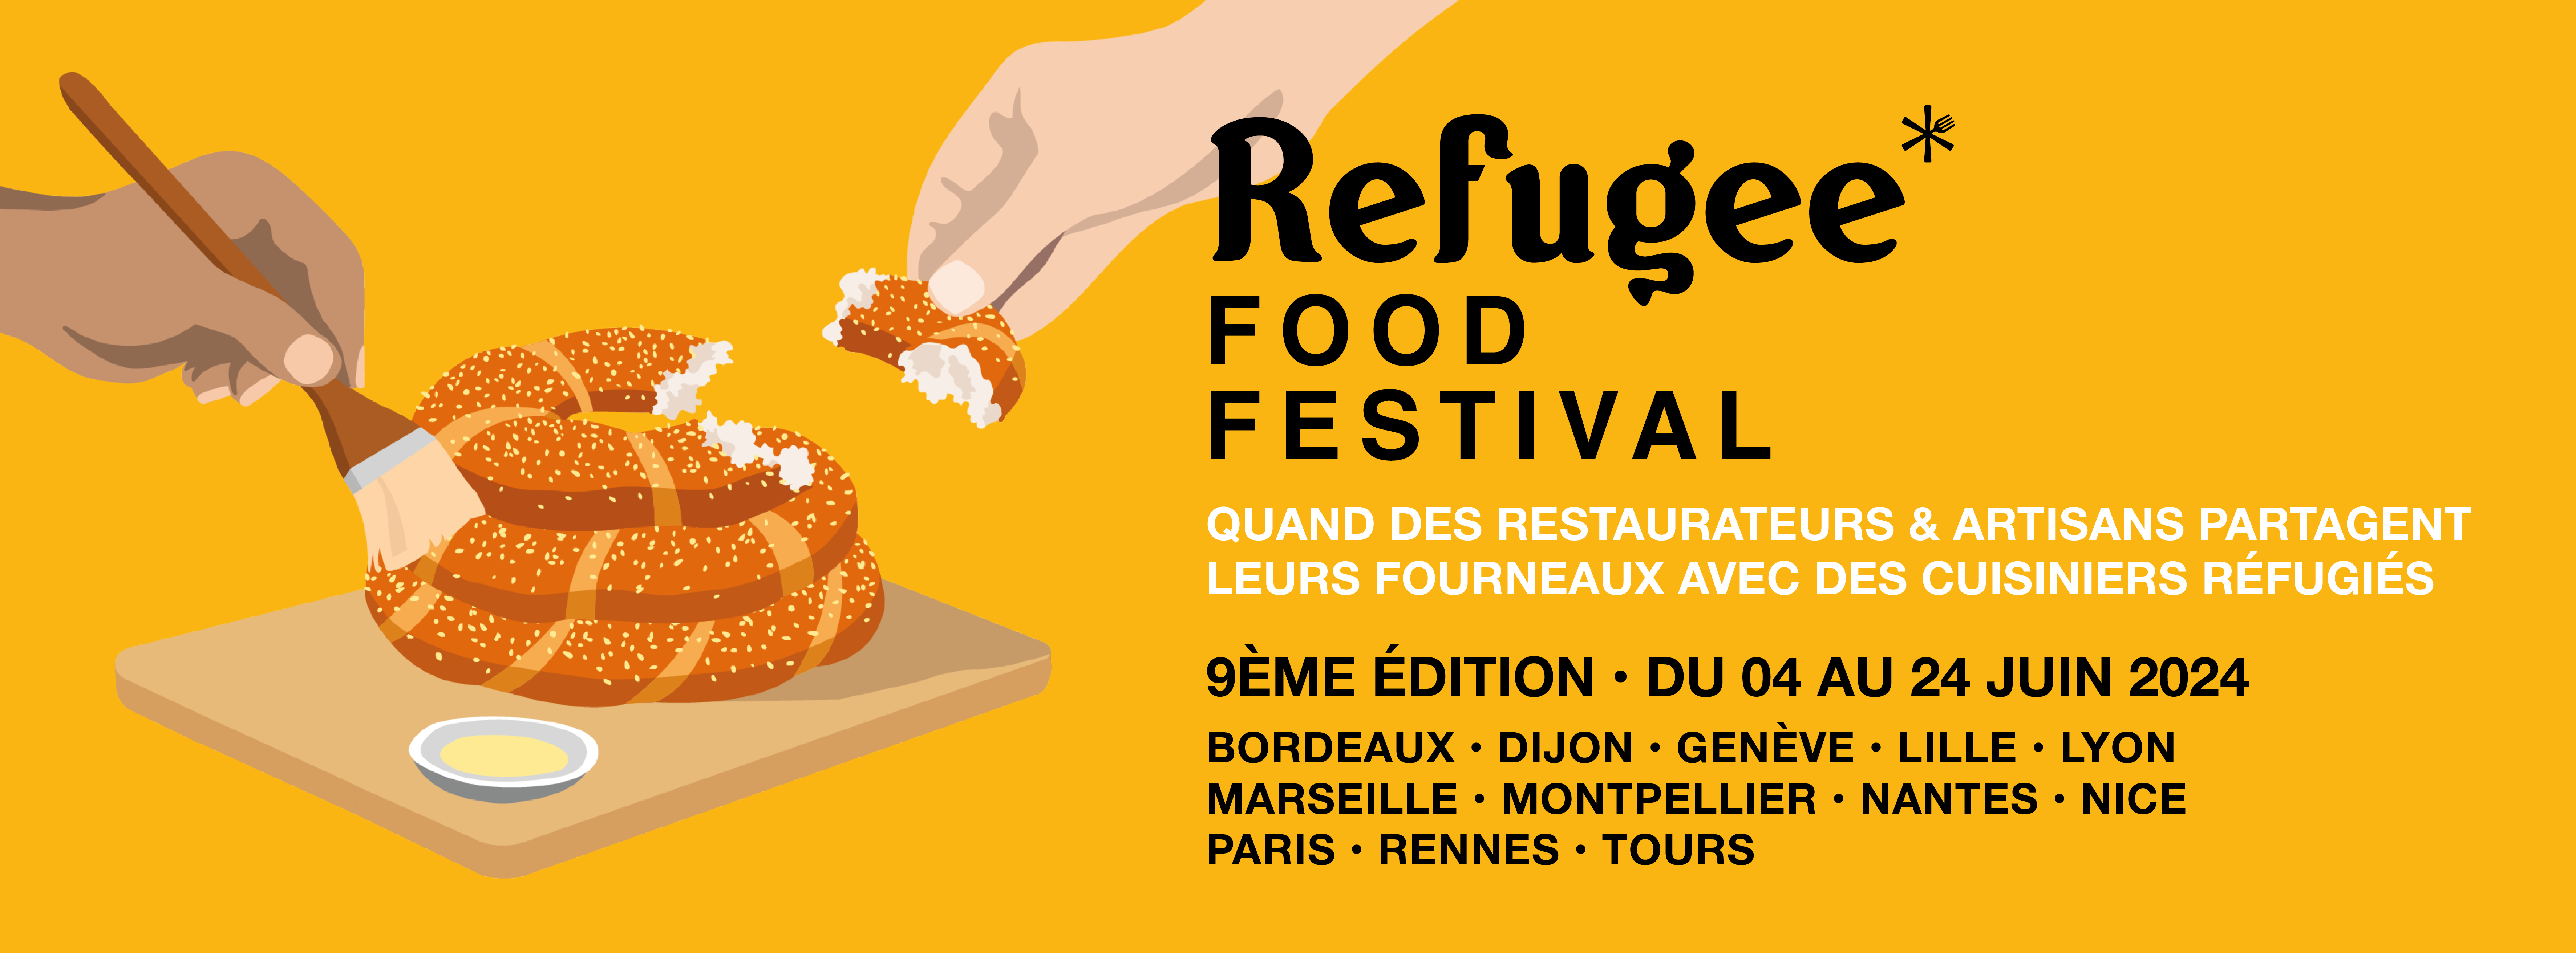 Refugee Food Festival 2024